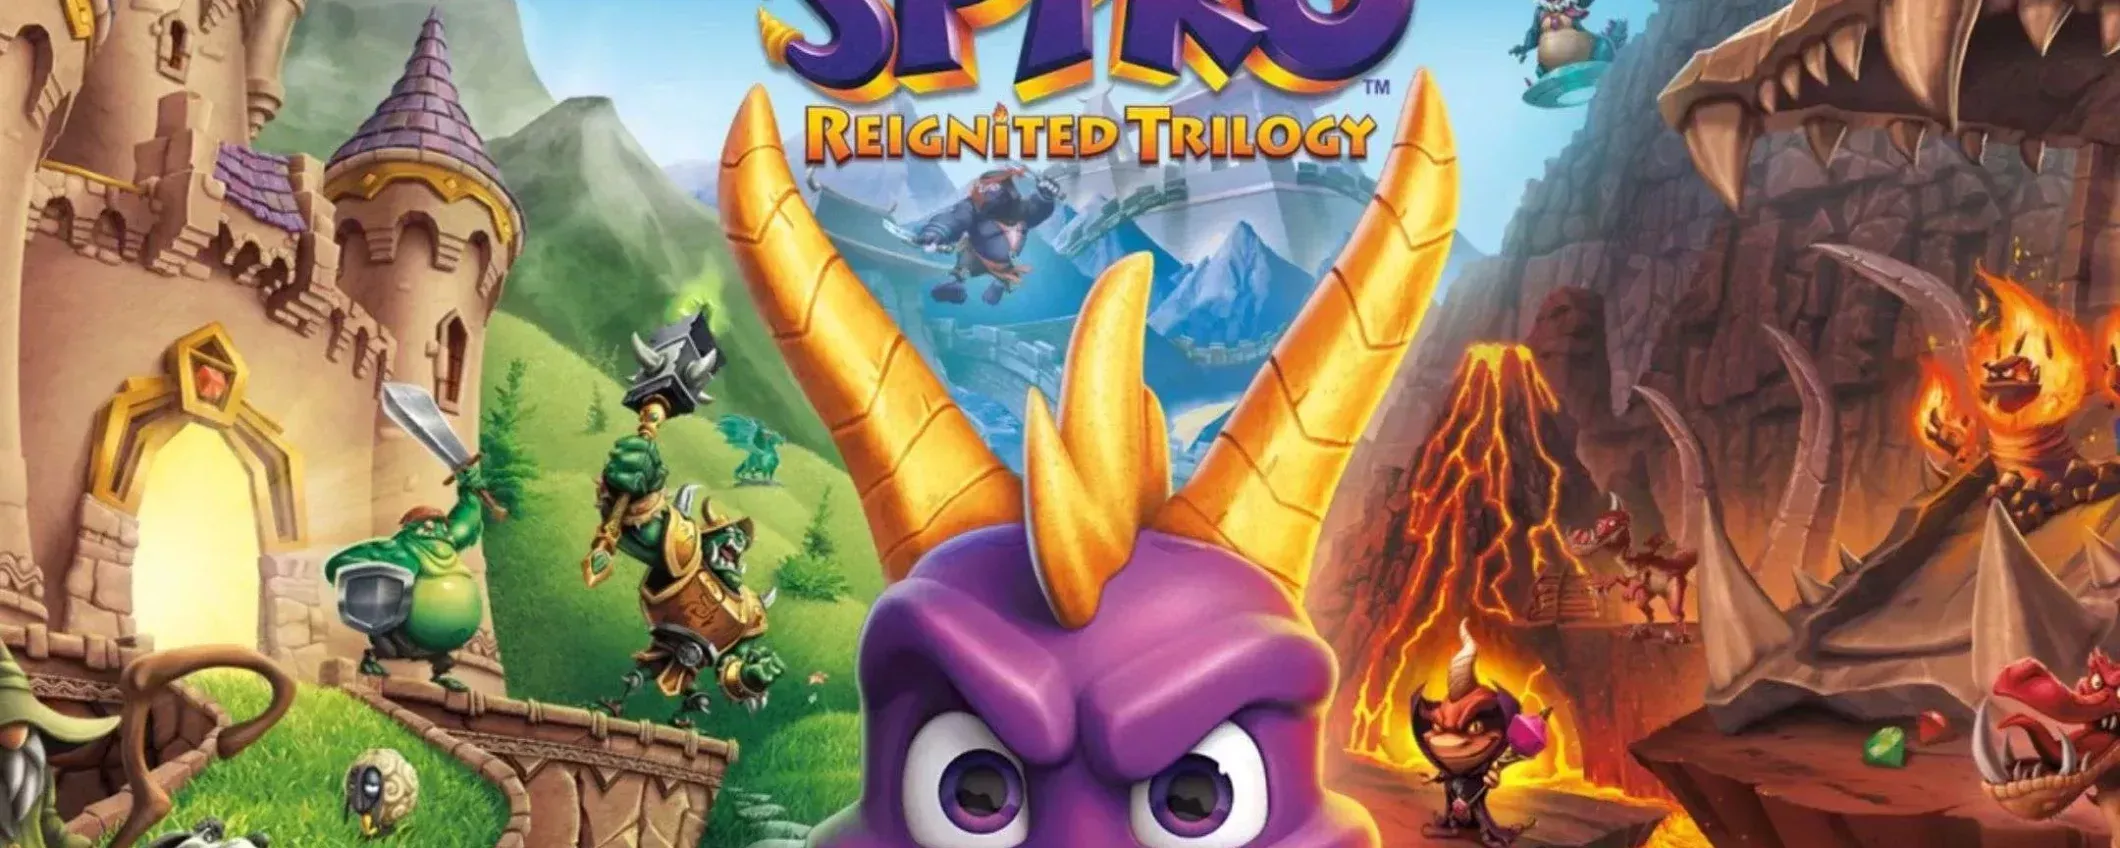 Spyro Reignited Trilogy per Nintendo Switch: sconto ASSURDO del 28% su Amazon